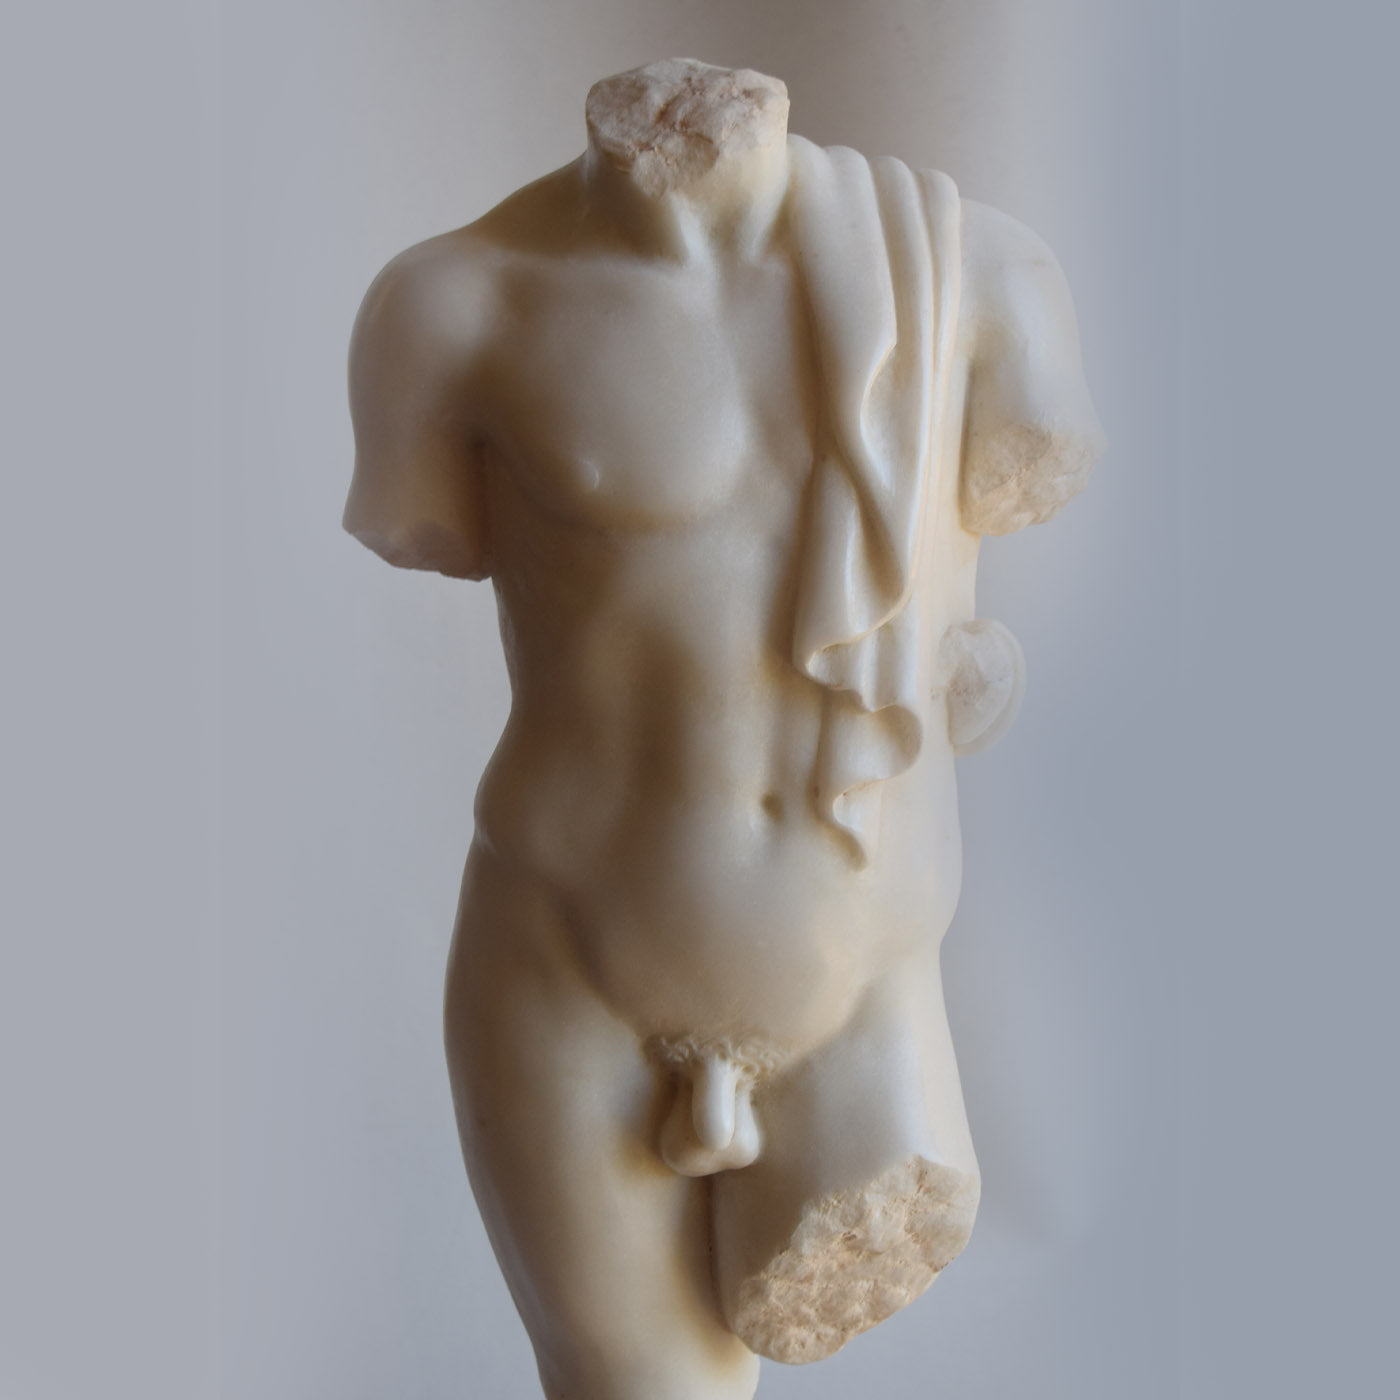 Draped Male Torso Sculpture - Alternative view 1